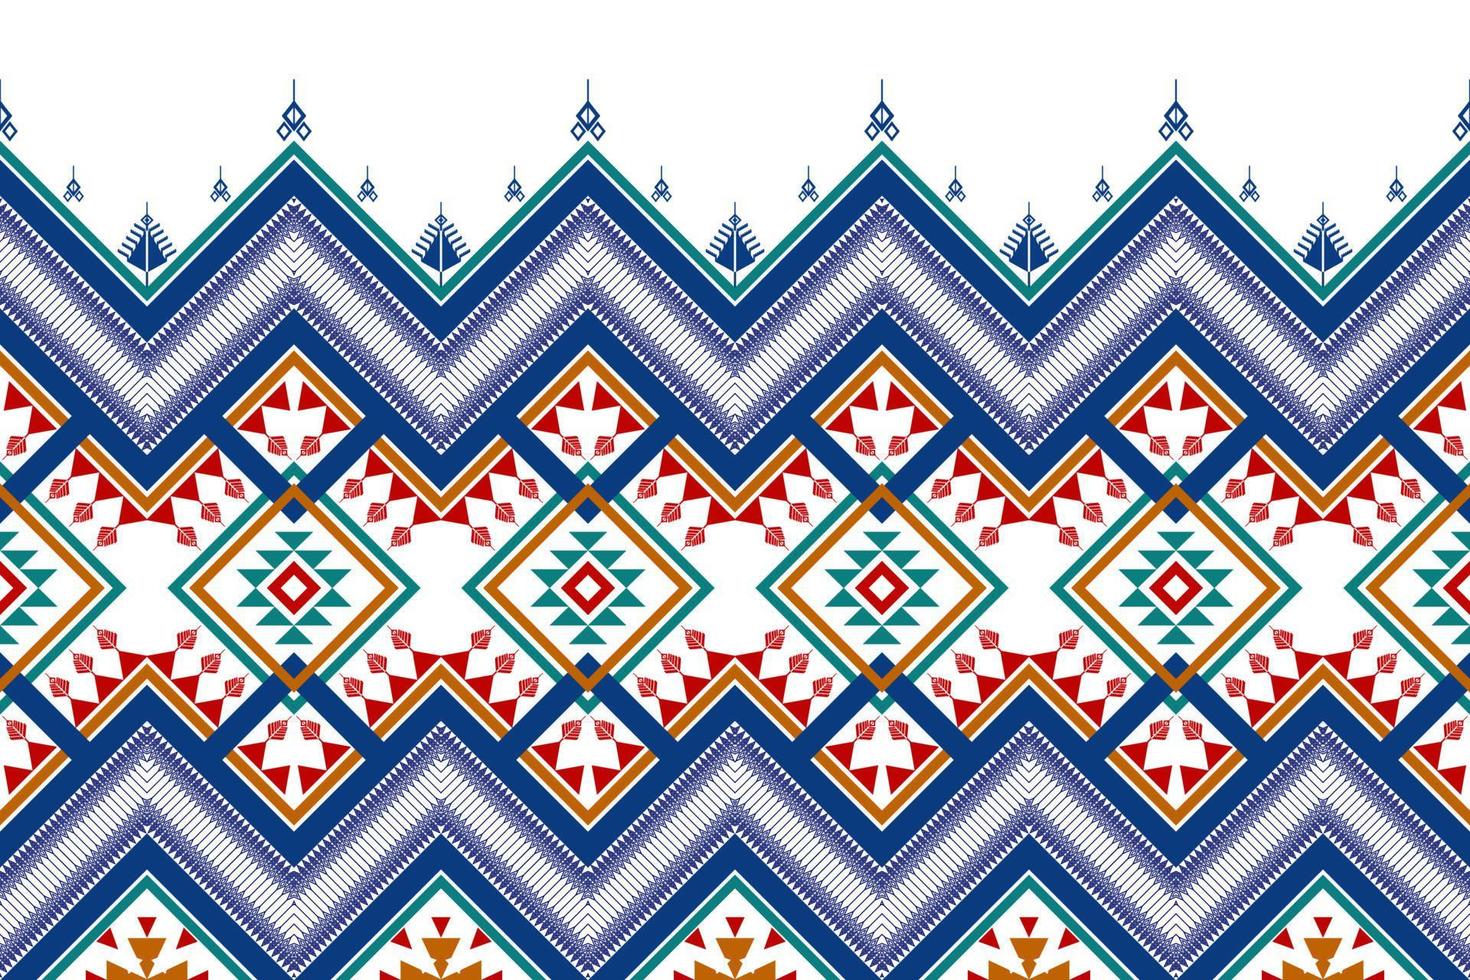 conception de modèle sans couture ethnique géométrique. tapis en tissu aztèque ornement mandala chevron décoration textile papier peint. tribal boho dinde fond de broderie traditionnelle afro-américaine vecteur